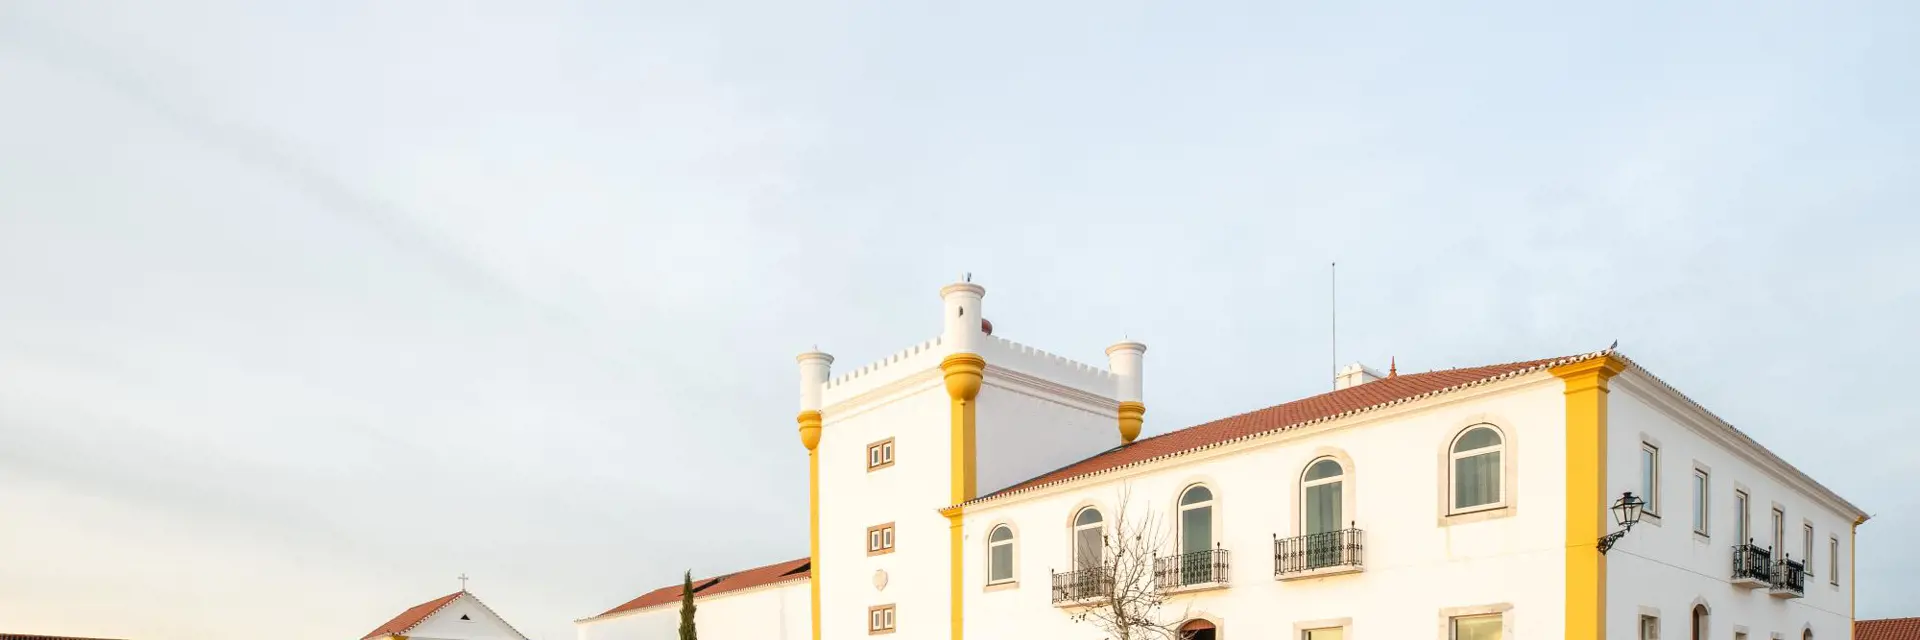 Torre de Palma Wine Hotel